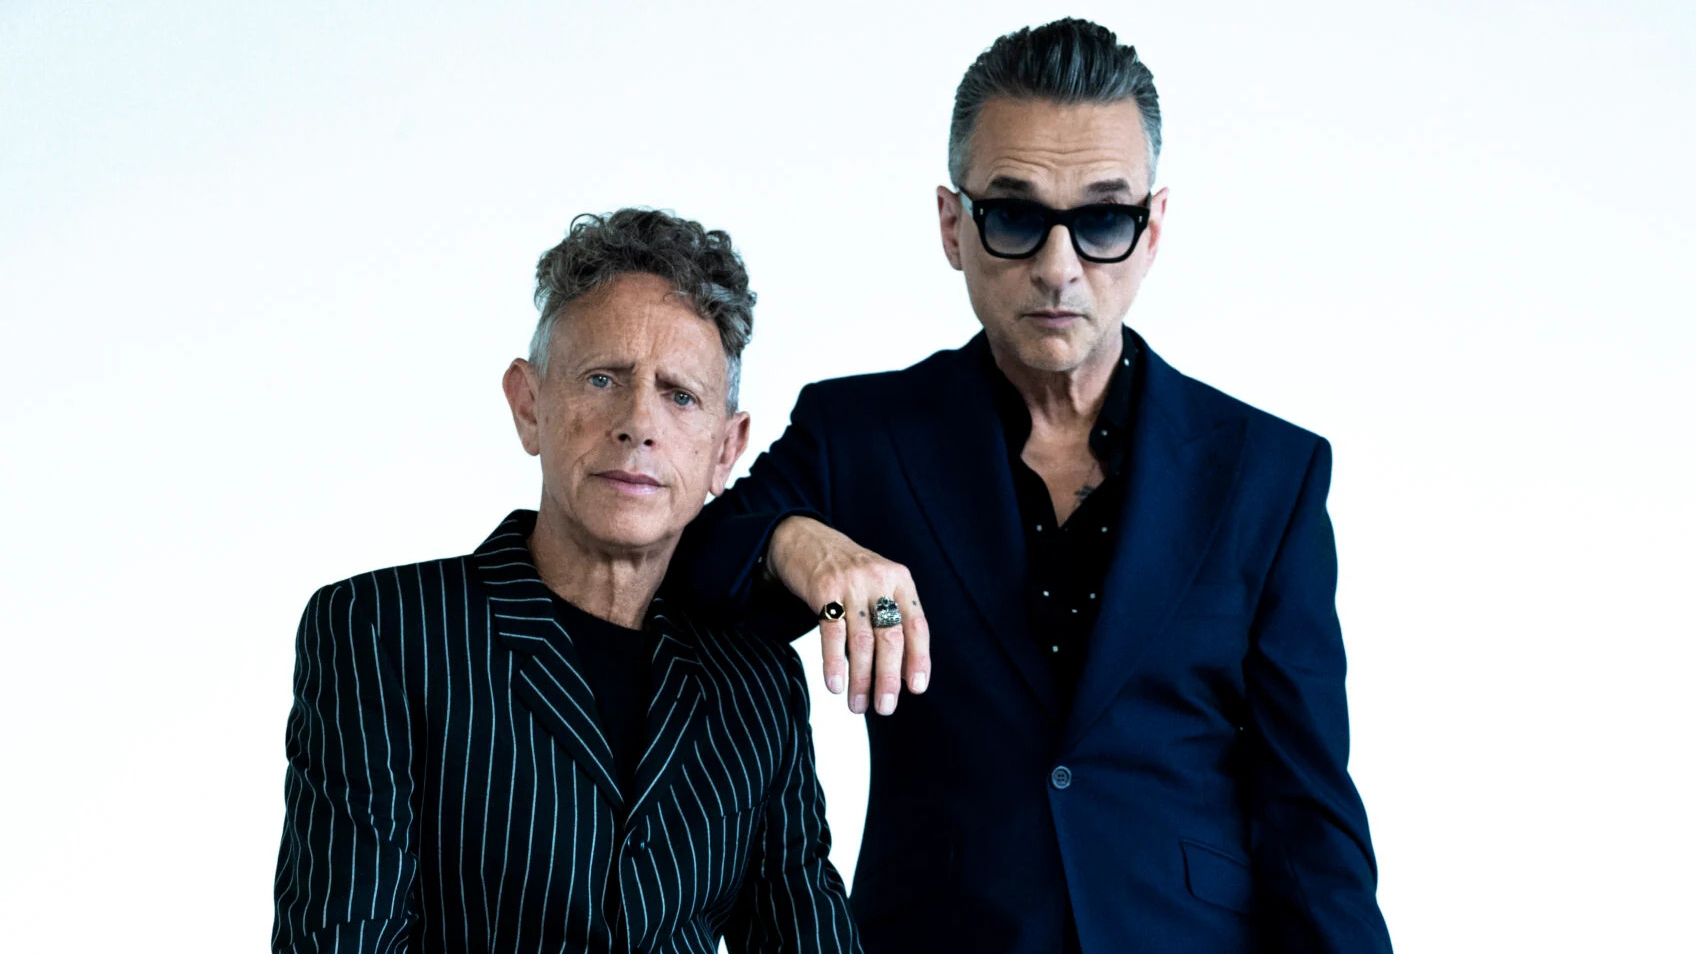 Home / a Depeche Mode website